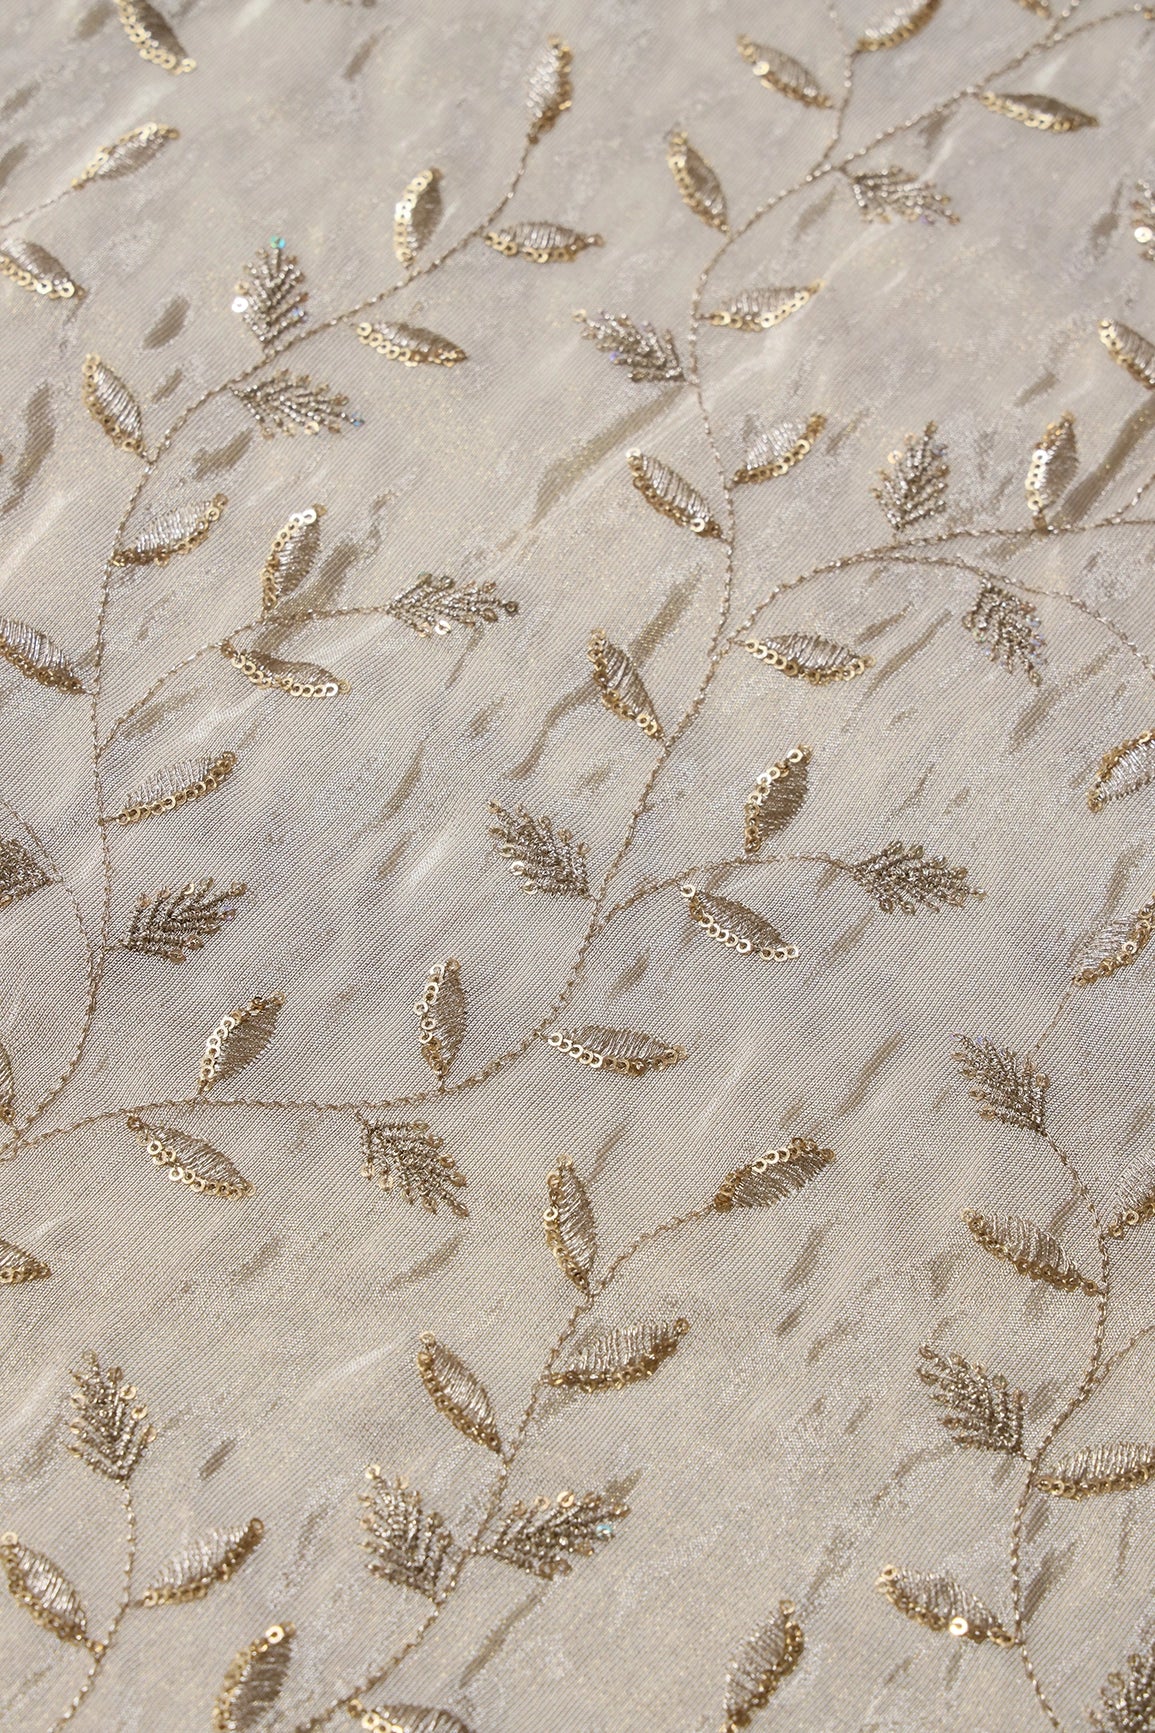 Gold Sequins And Zari Leafy Embroidery Work On Cream Pure Viscose Zari Tissue Fabric